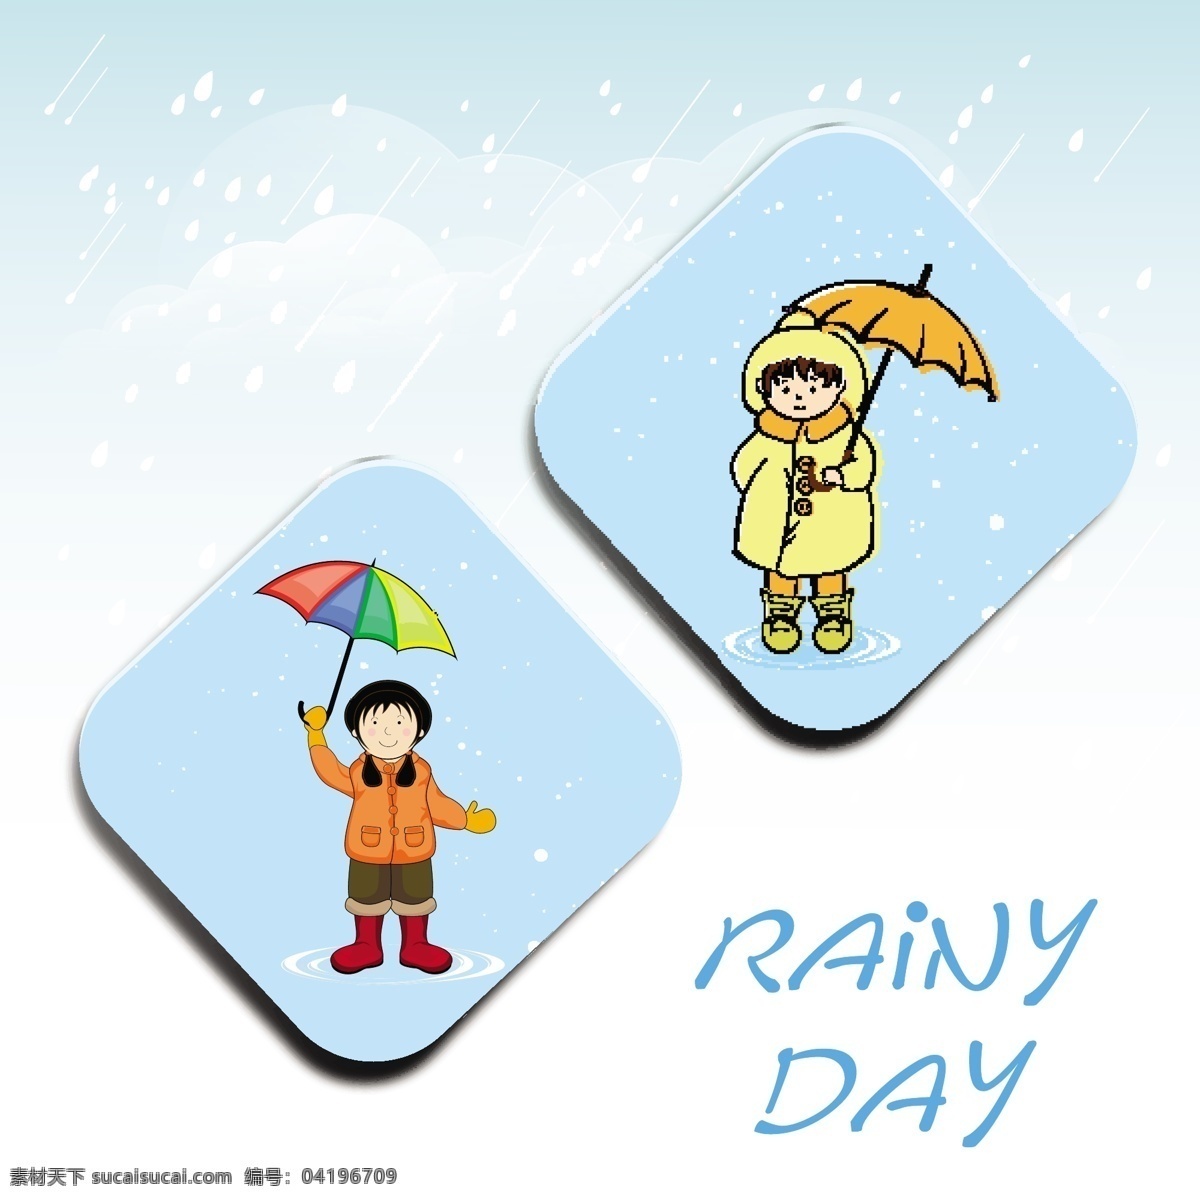 雨天 打伞 女孩 背景 模板下载 坏天气 雨伞 雨鞋 雨滴 彩虹伞 儿童幼儿 矢量人物 矢量素材 白色